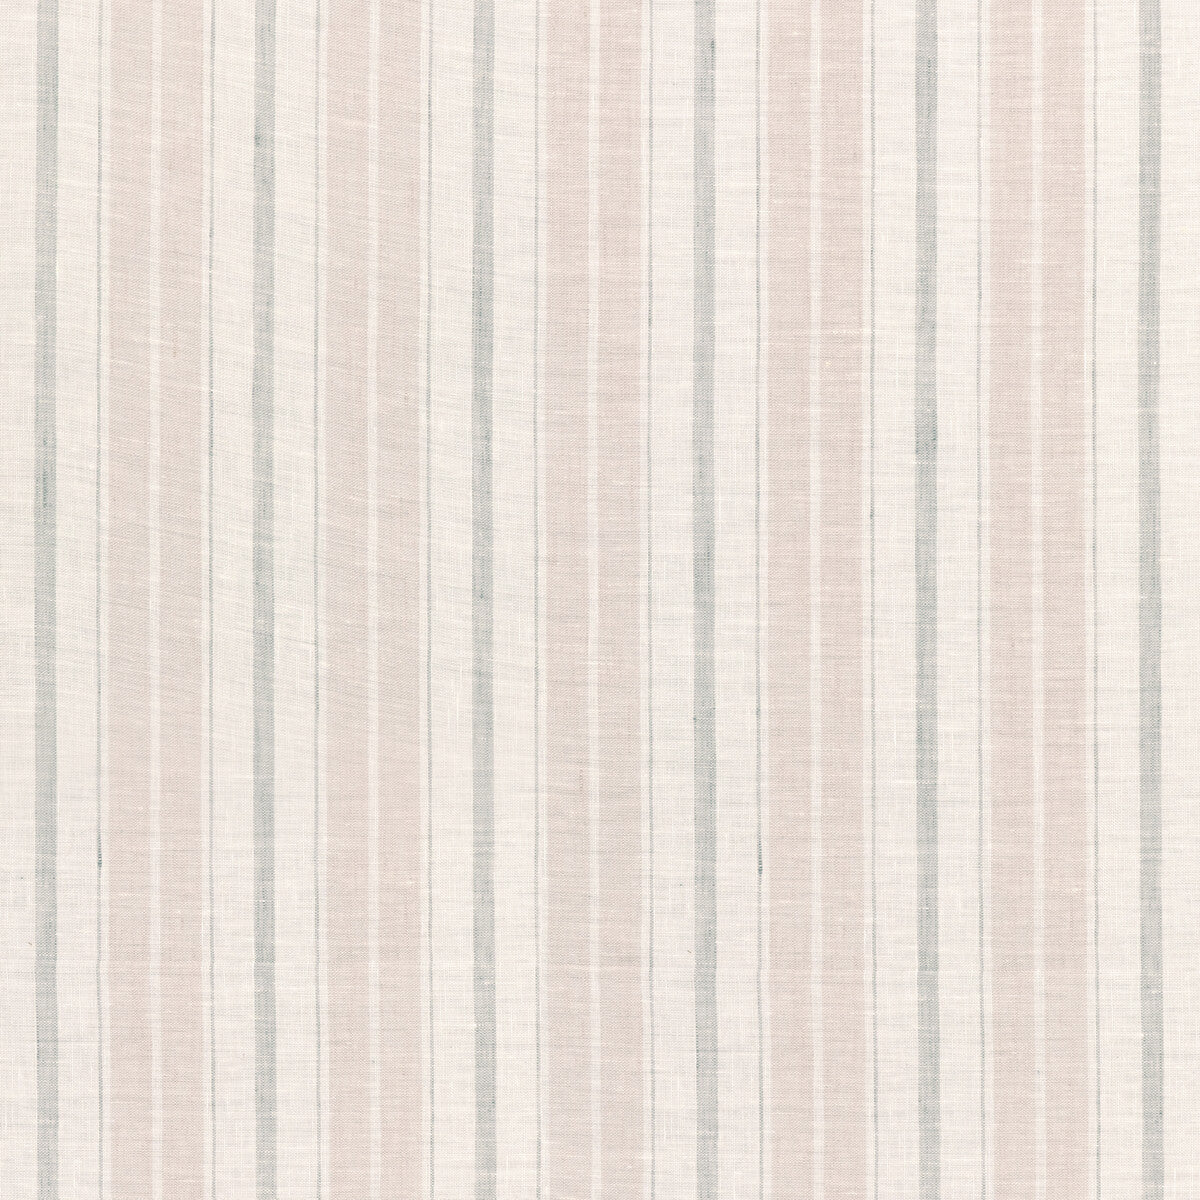 Kravet Design fabric in 4841-1711 color - pattern 4841.1711.0 - by Kravet Design